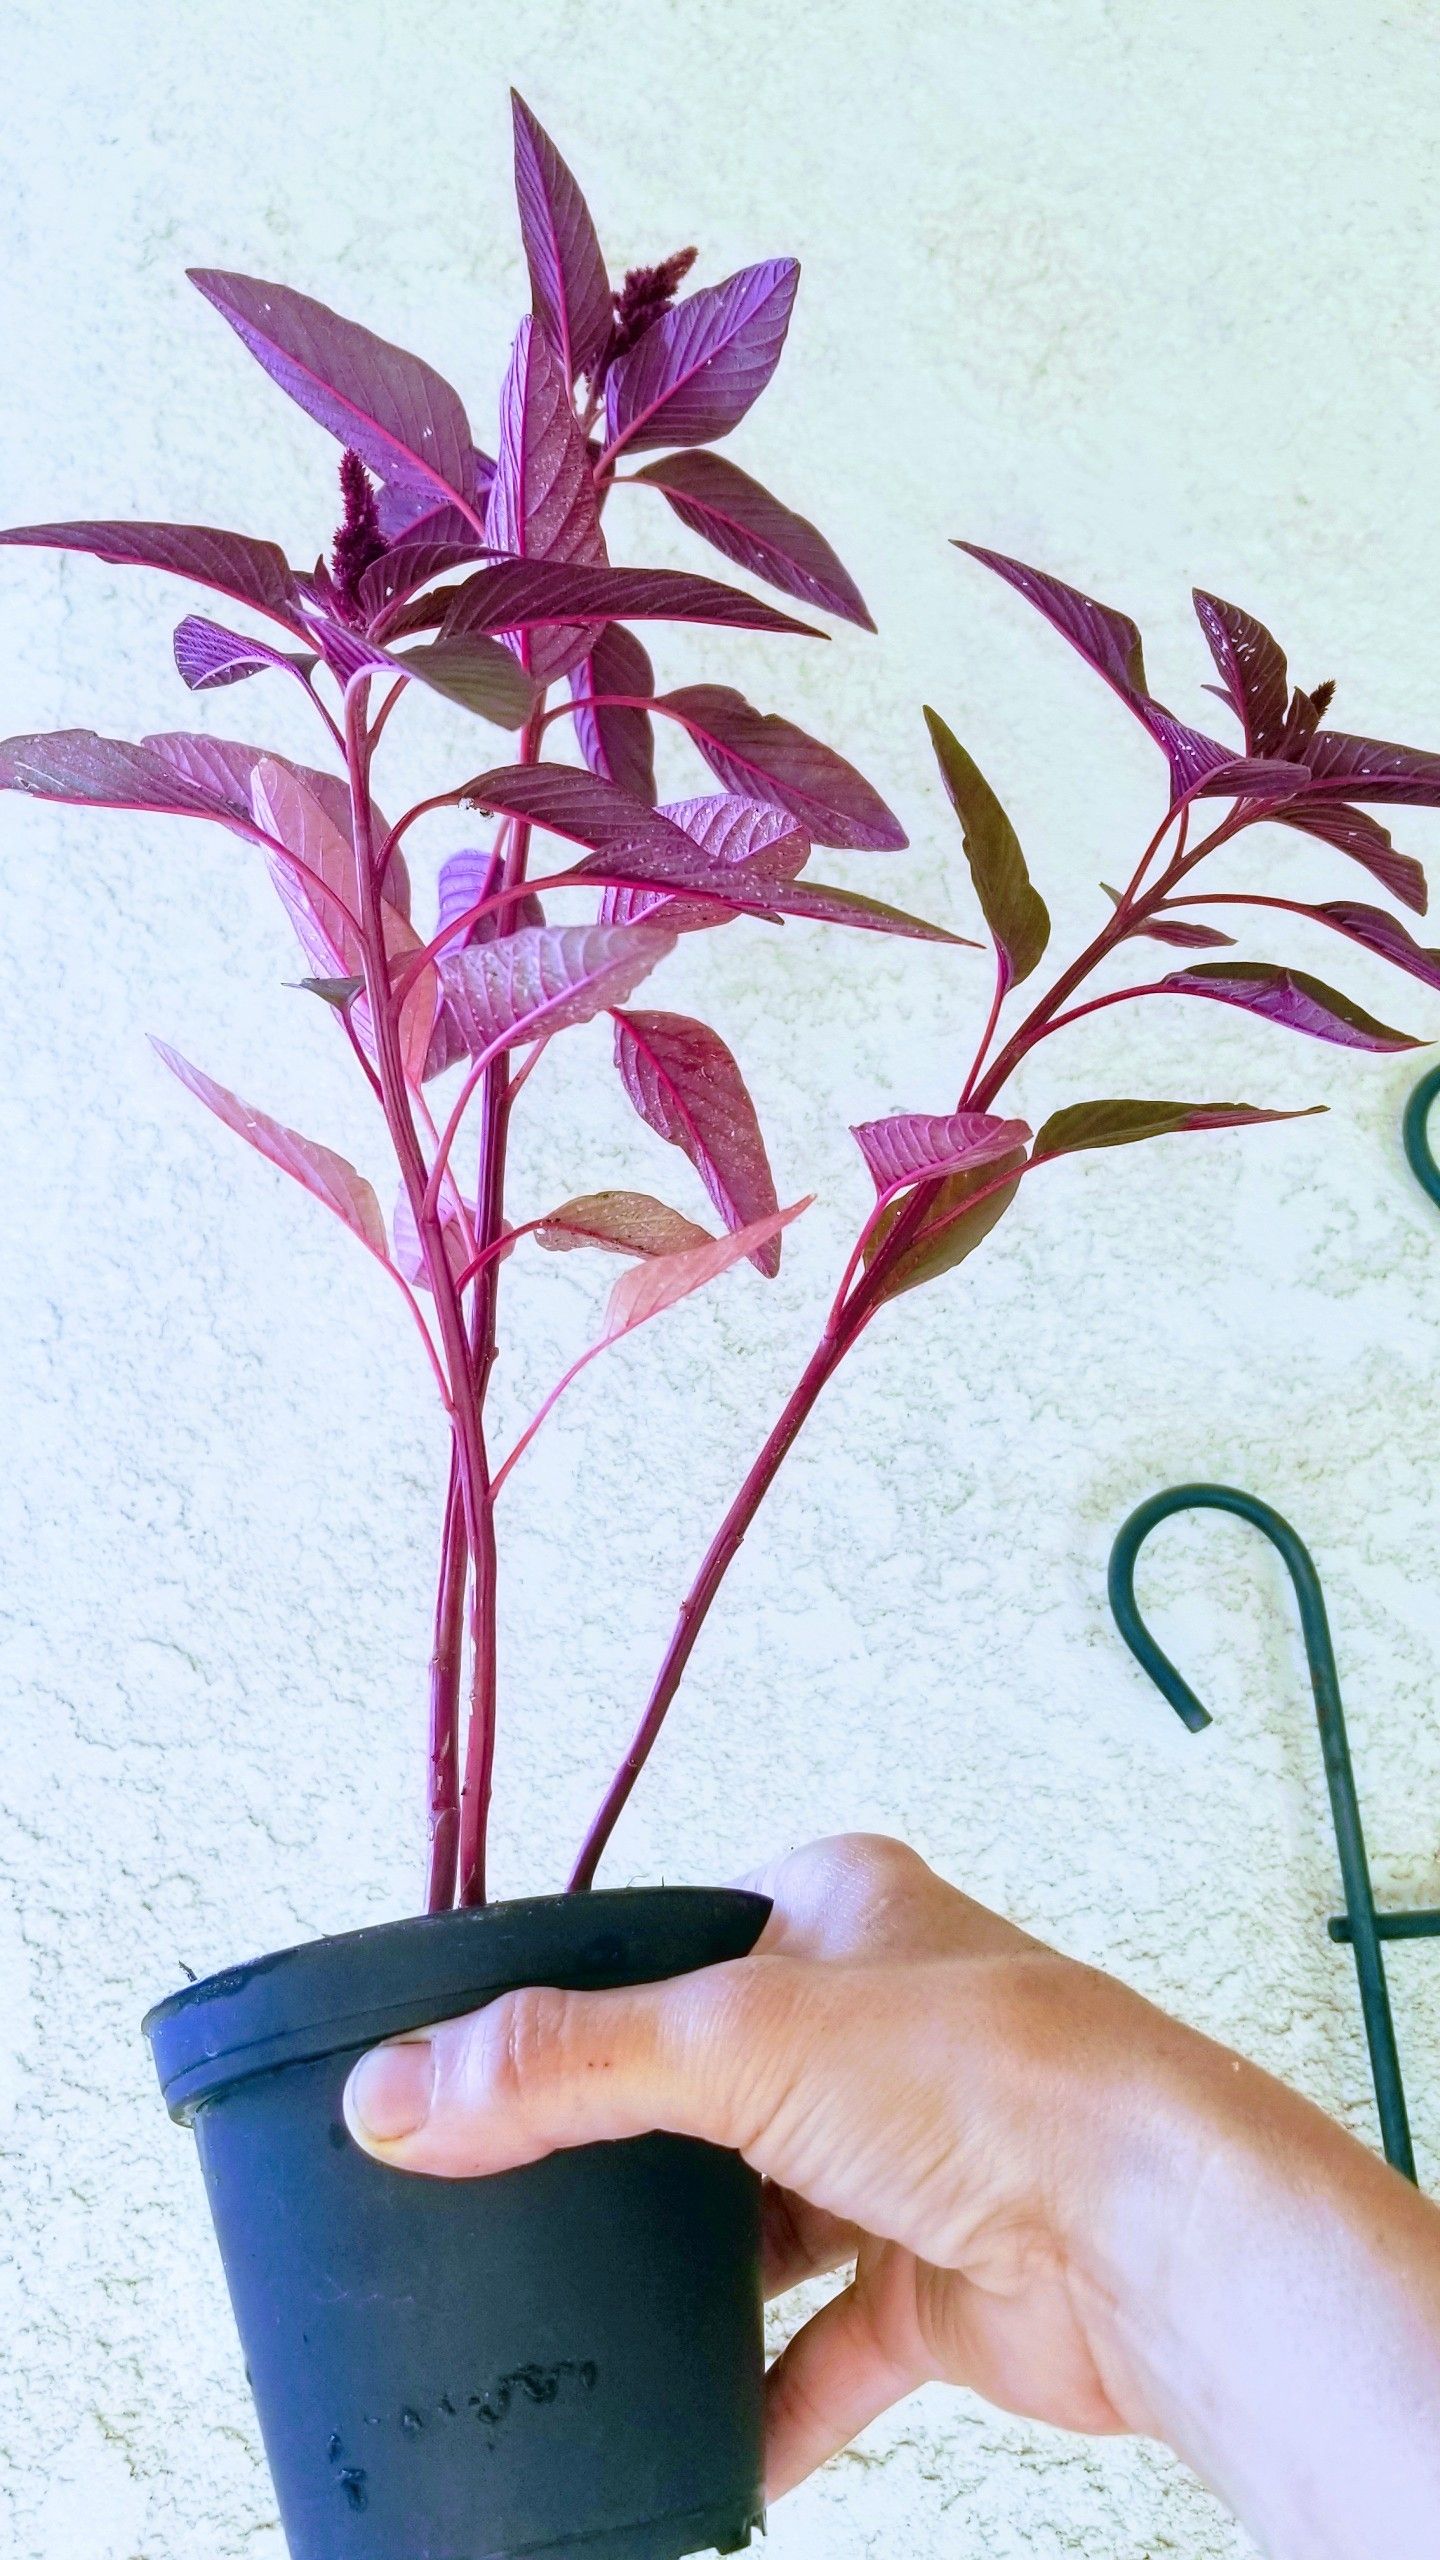 Nice purple plant